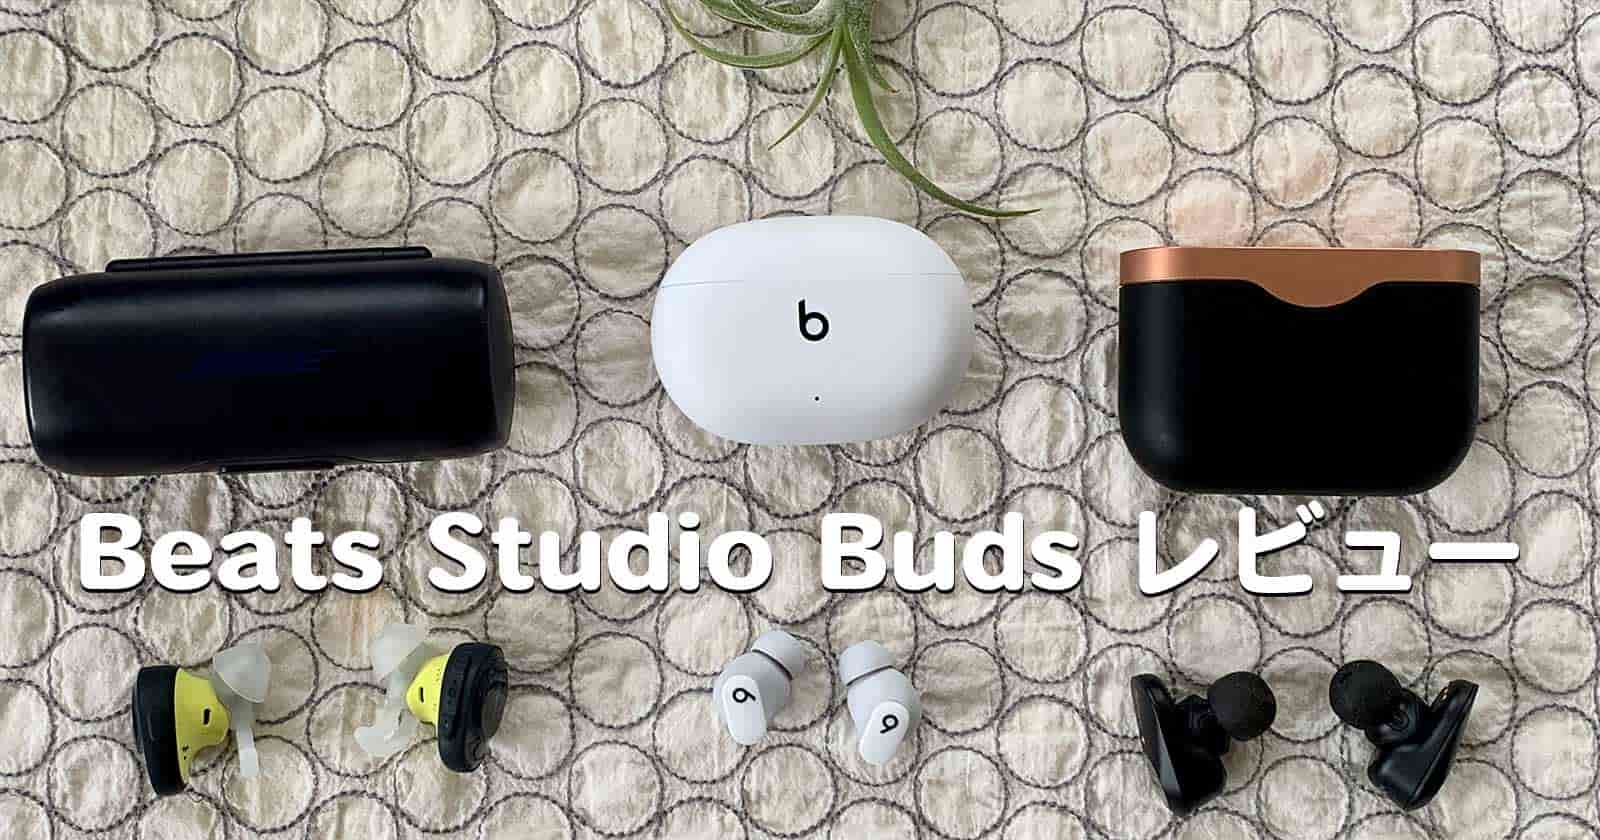 9239円 人気ブランドの新作 Apple Beats Studio Buds ワイヤレスノイズキャンセリング…